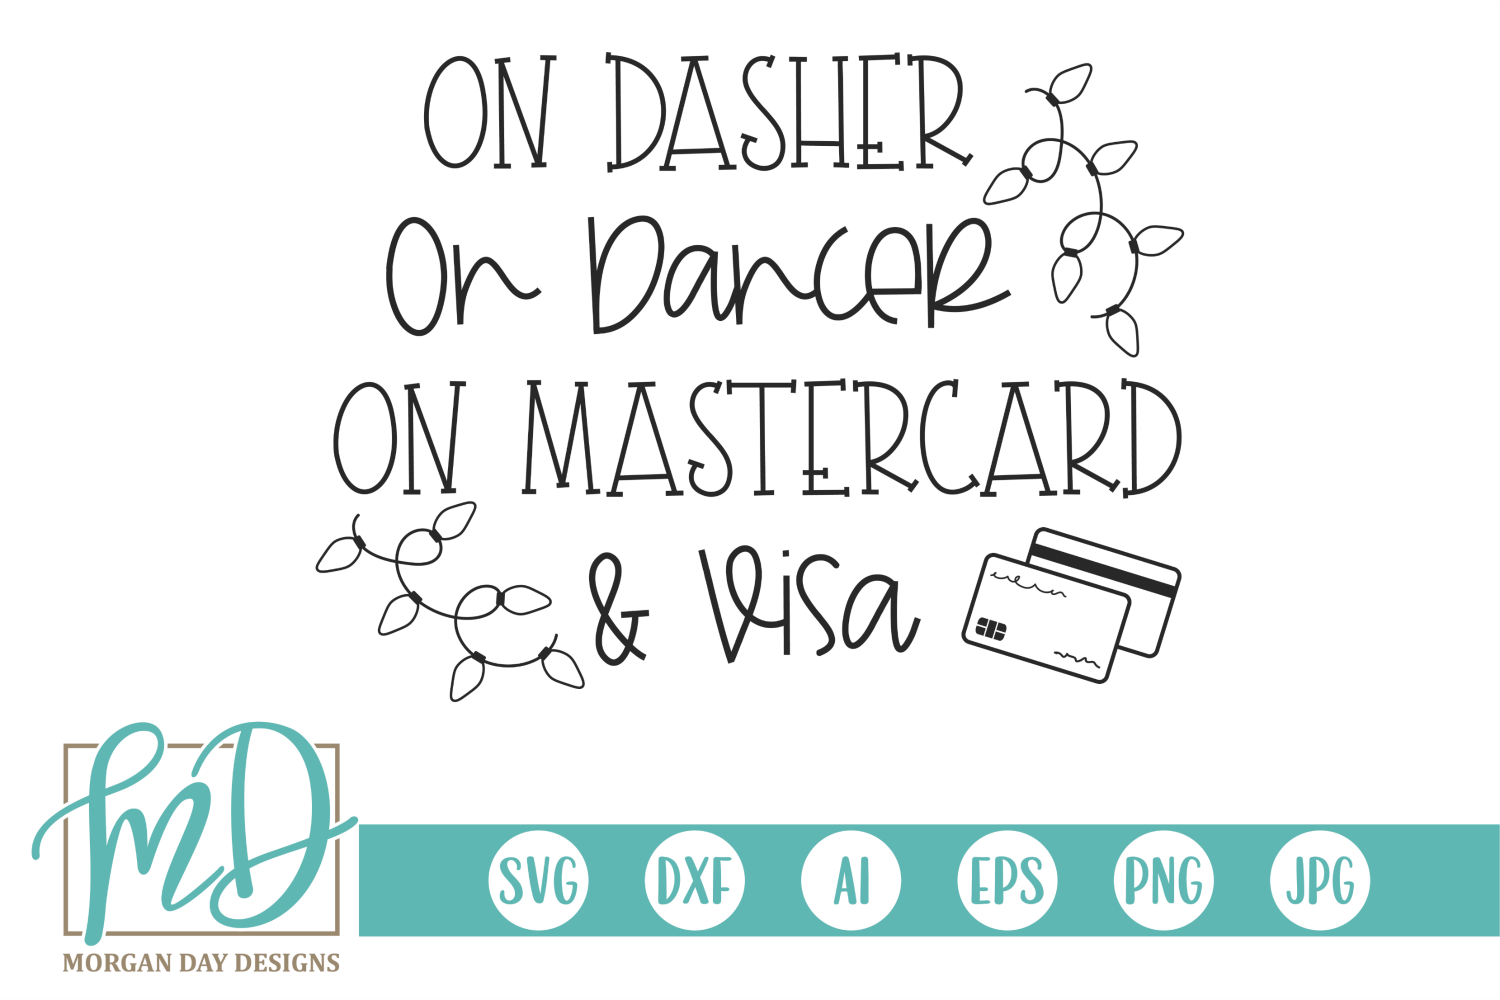 Download Free On Dasher On Dancer On Mastercard Visa Black Friday Svg PSD Mockup Template